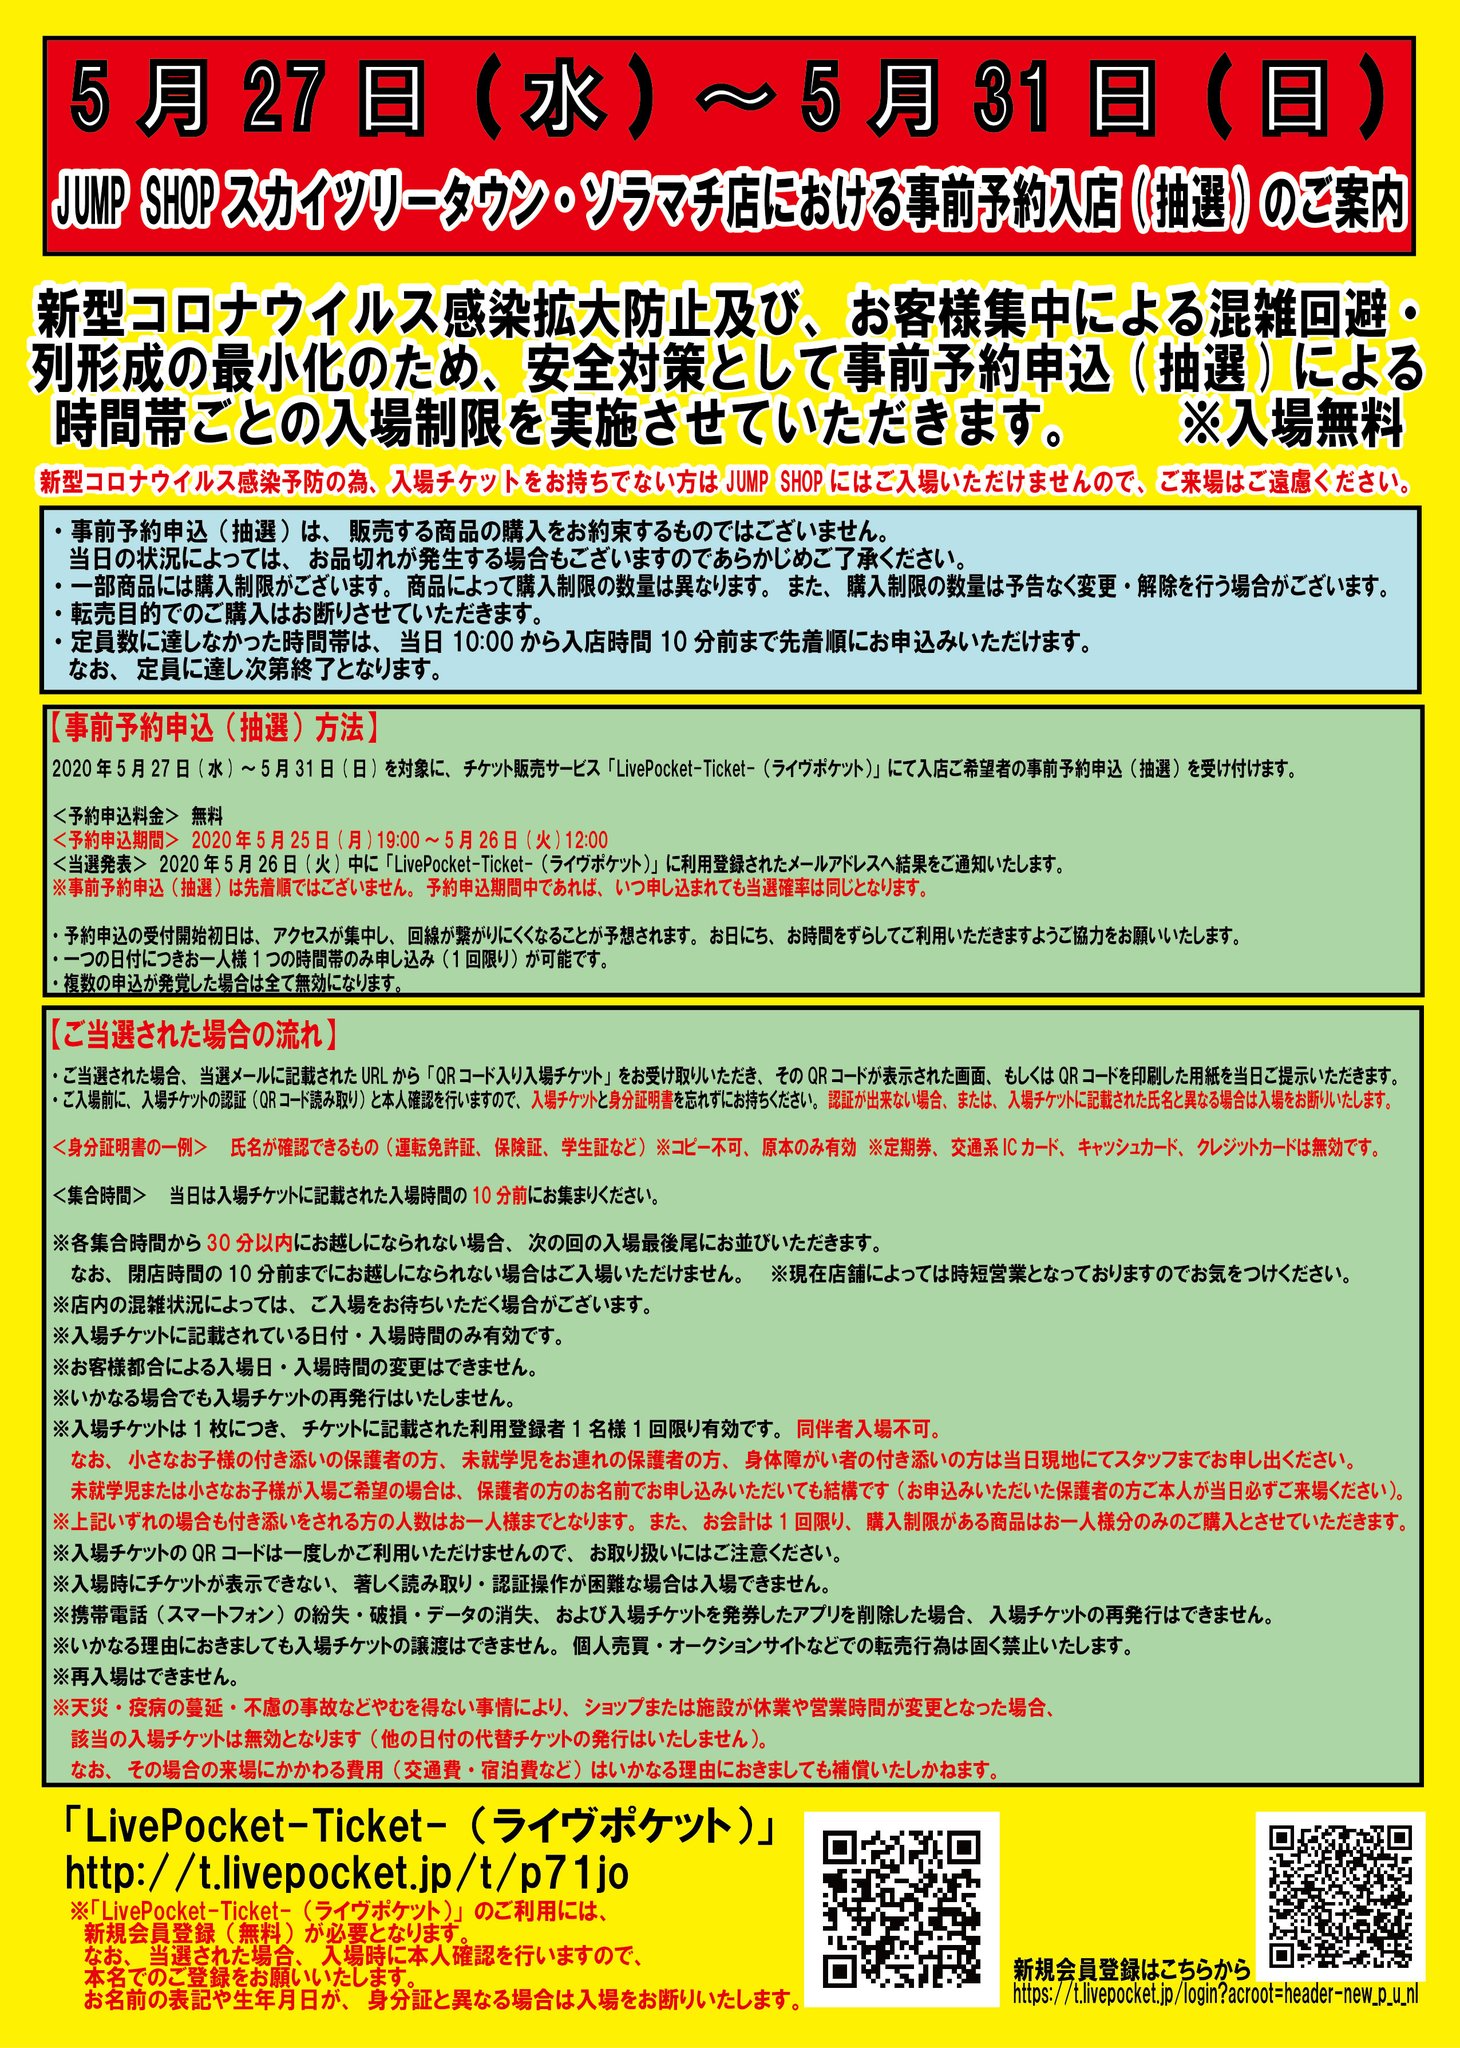 ジャンプショップ Jump Shop 公式 Jump Shop東京スカイツリータウン ソラマチ店では新型コロナウィルス感染拡大防止の為 事前予約申込による入場制限を行います 対象 5 27 水 5 31 日 予約申込 5 26 火 12 00まで 当選発表 5 26 火 下記よりお